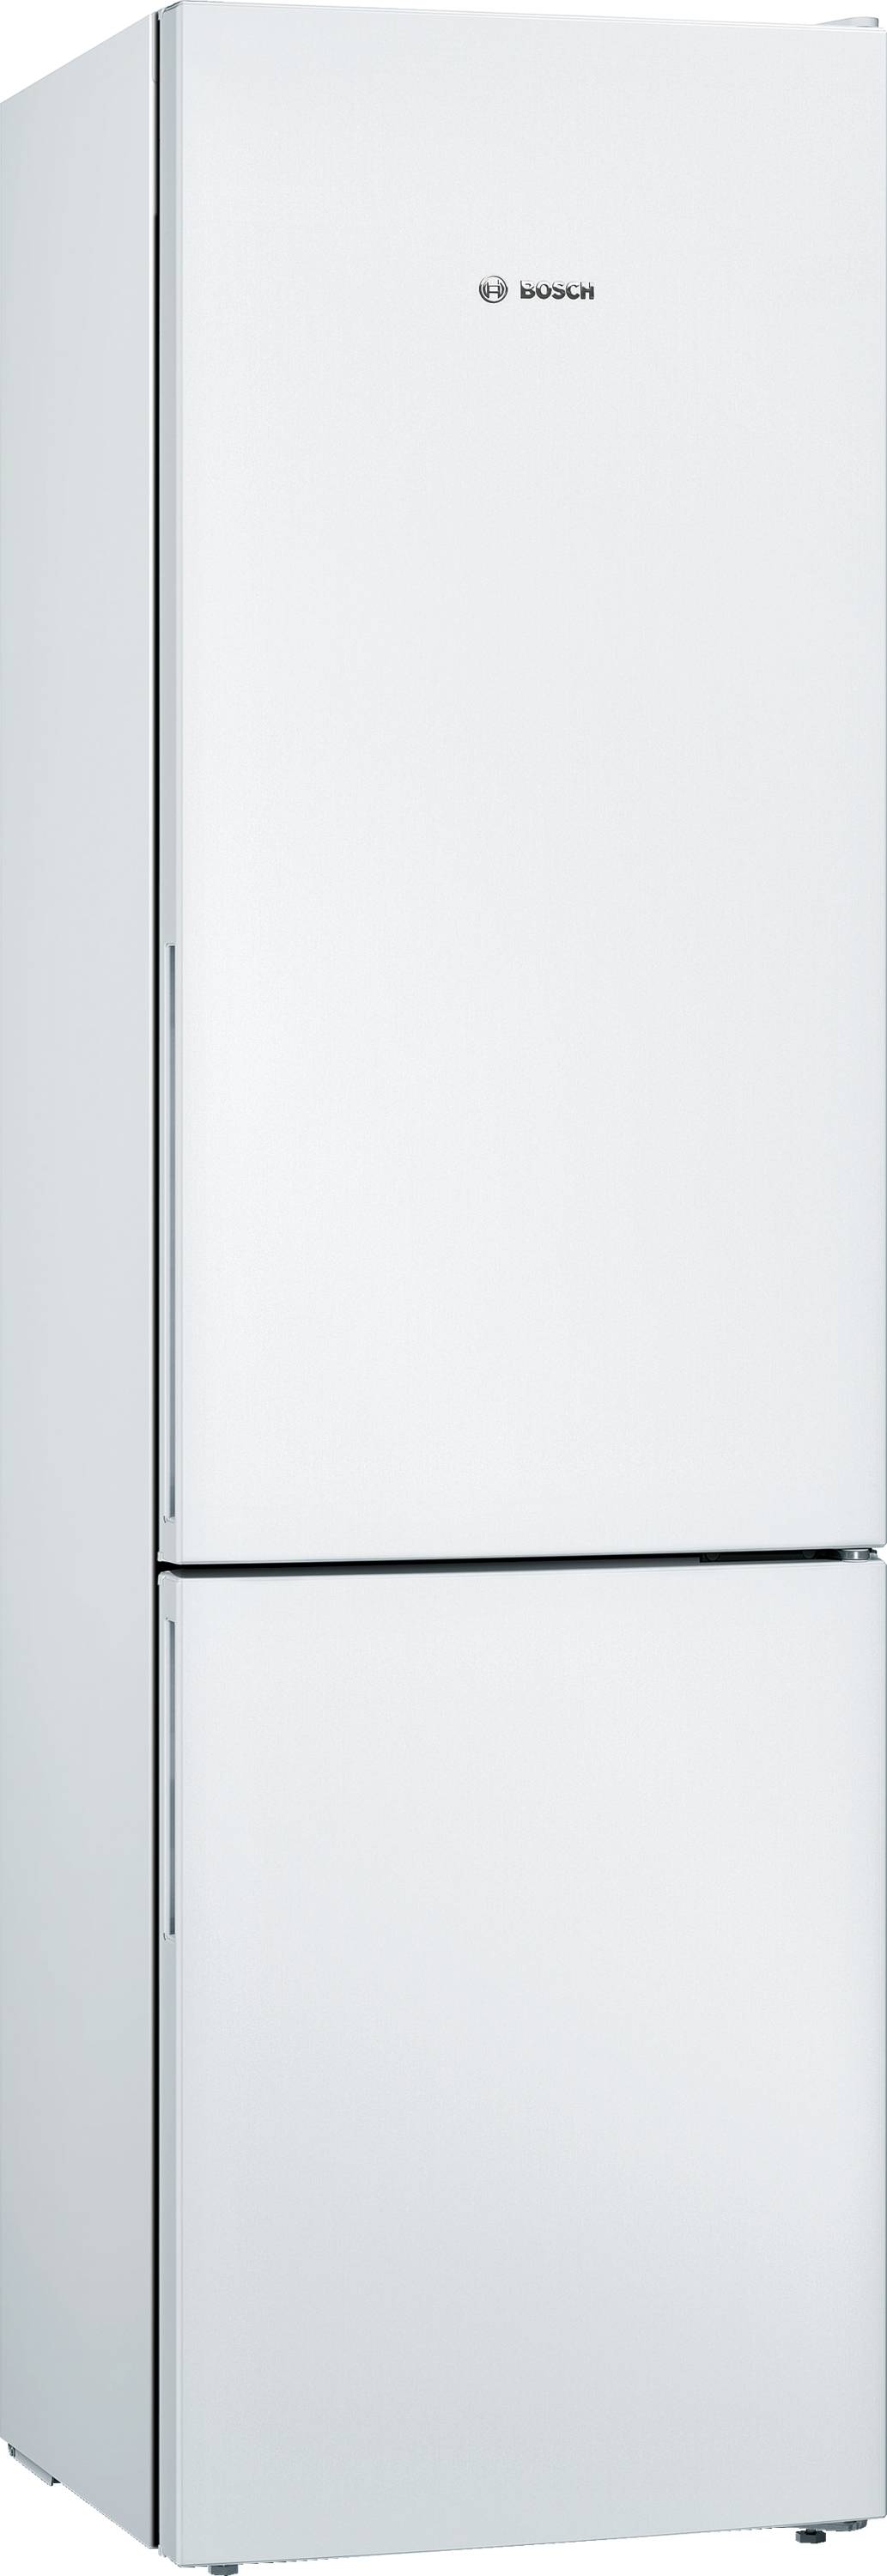 KGV39VWEA, Samostojeći frižider sa zamrzivačem dole